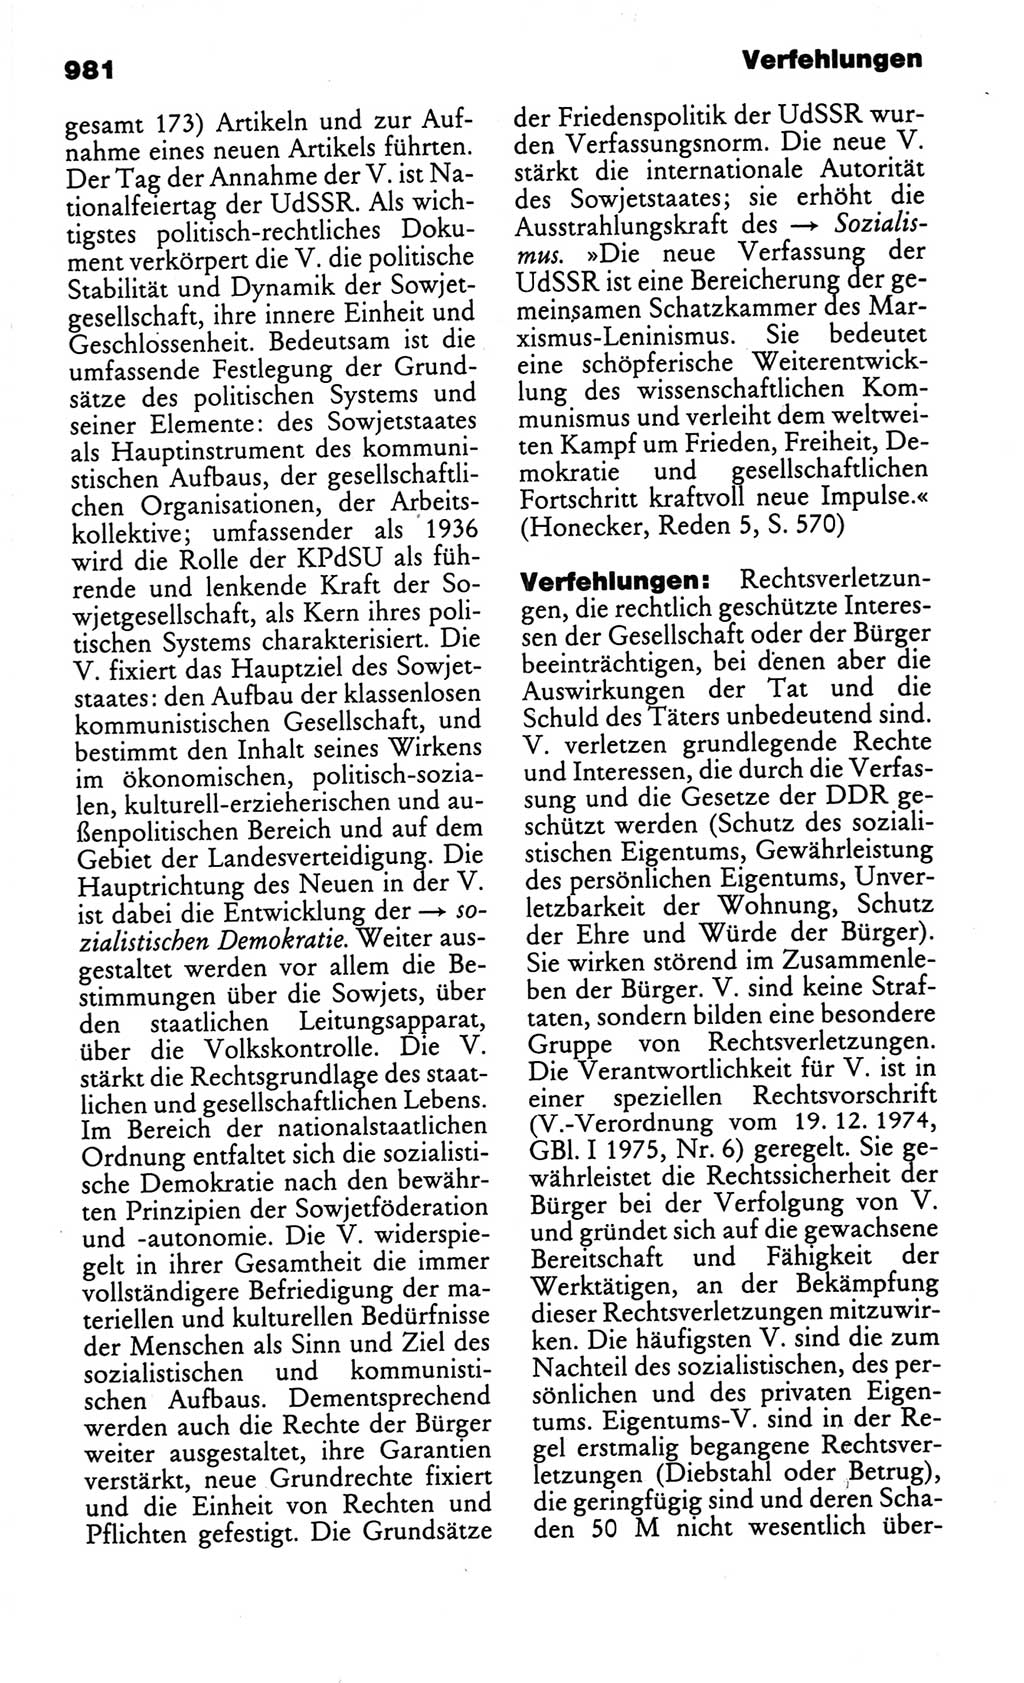 Kleines politisches Wörterbuch [Deutsche Demokratische Republik (DDR)] 1986, Seite 981 (Kl. pol. Wb. DDR 1986, S. 981)